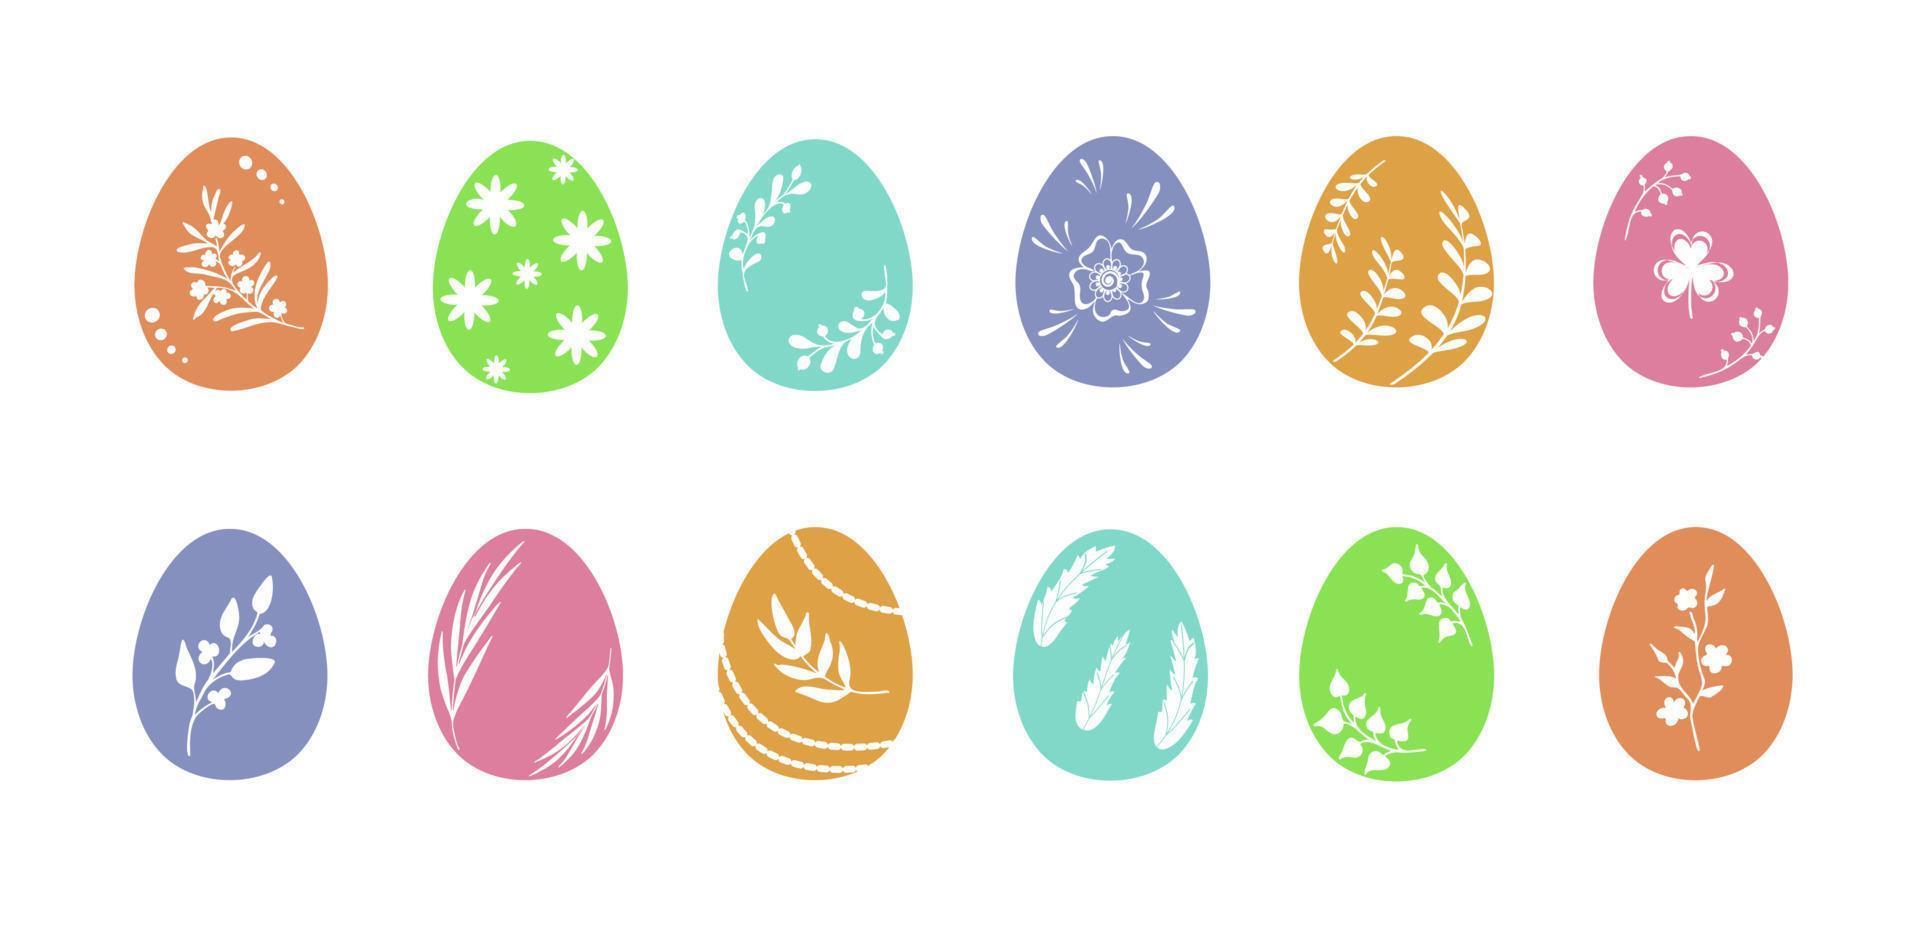 Pascua de Resurrección huevos en apagado colores con herbario y floral adornos conjunto de moderno símbolos, artístico plano vector objetos